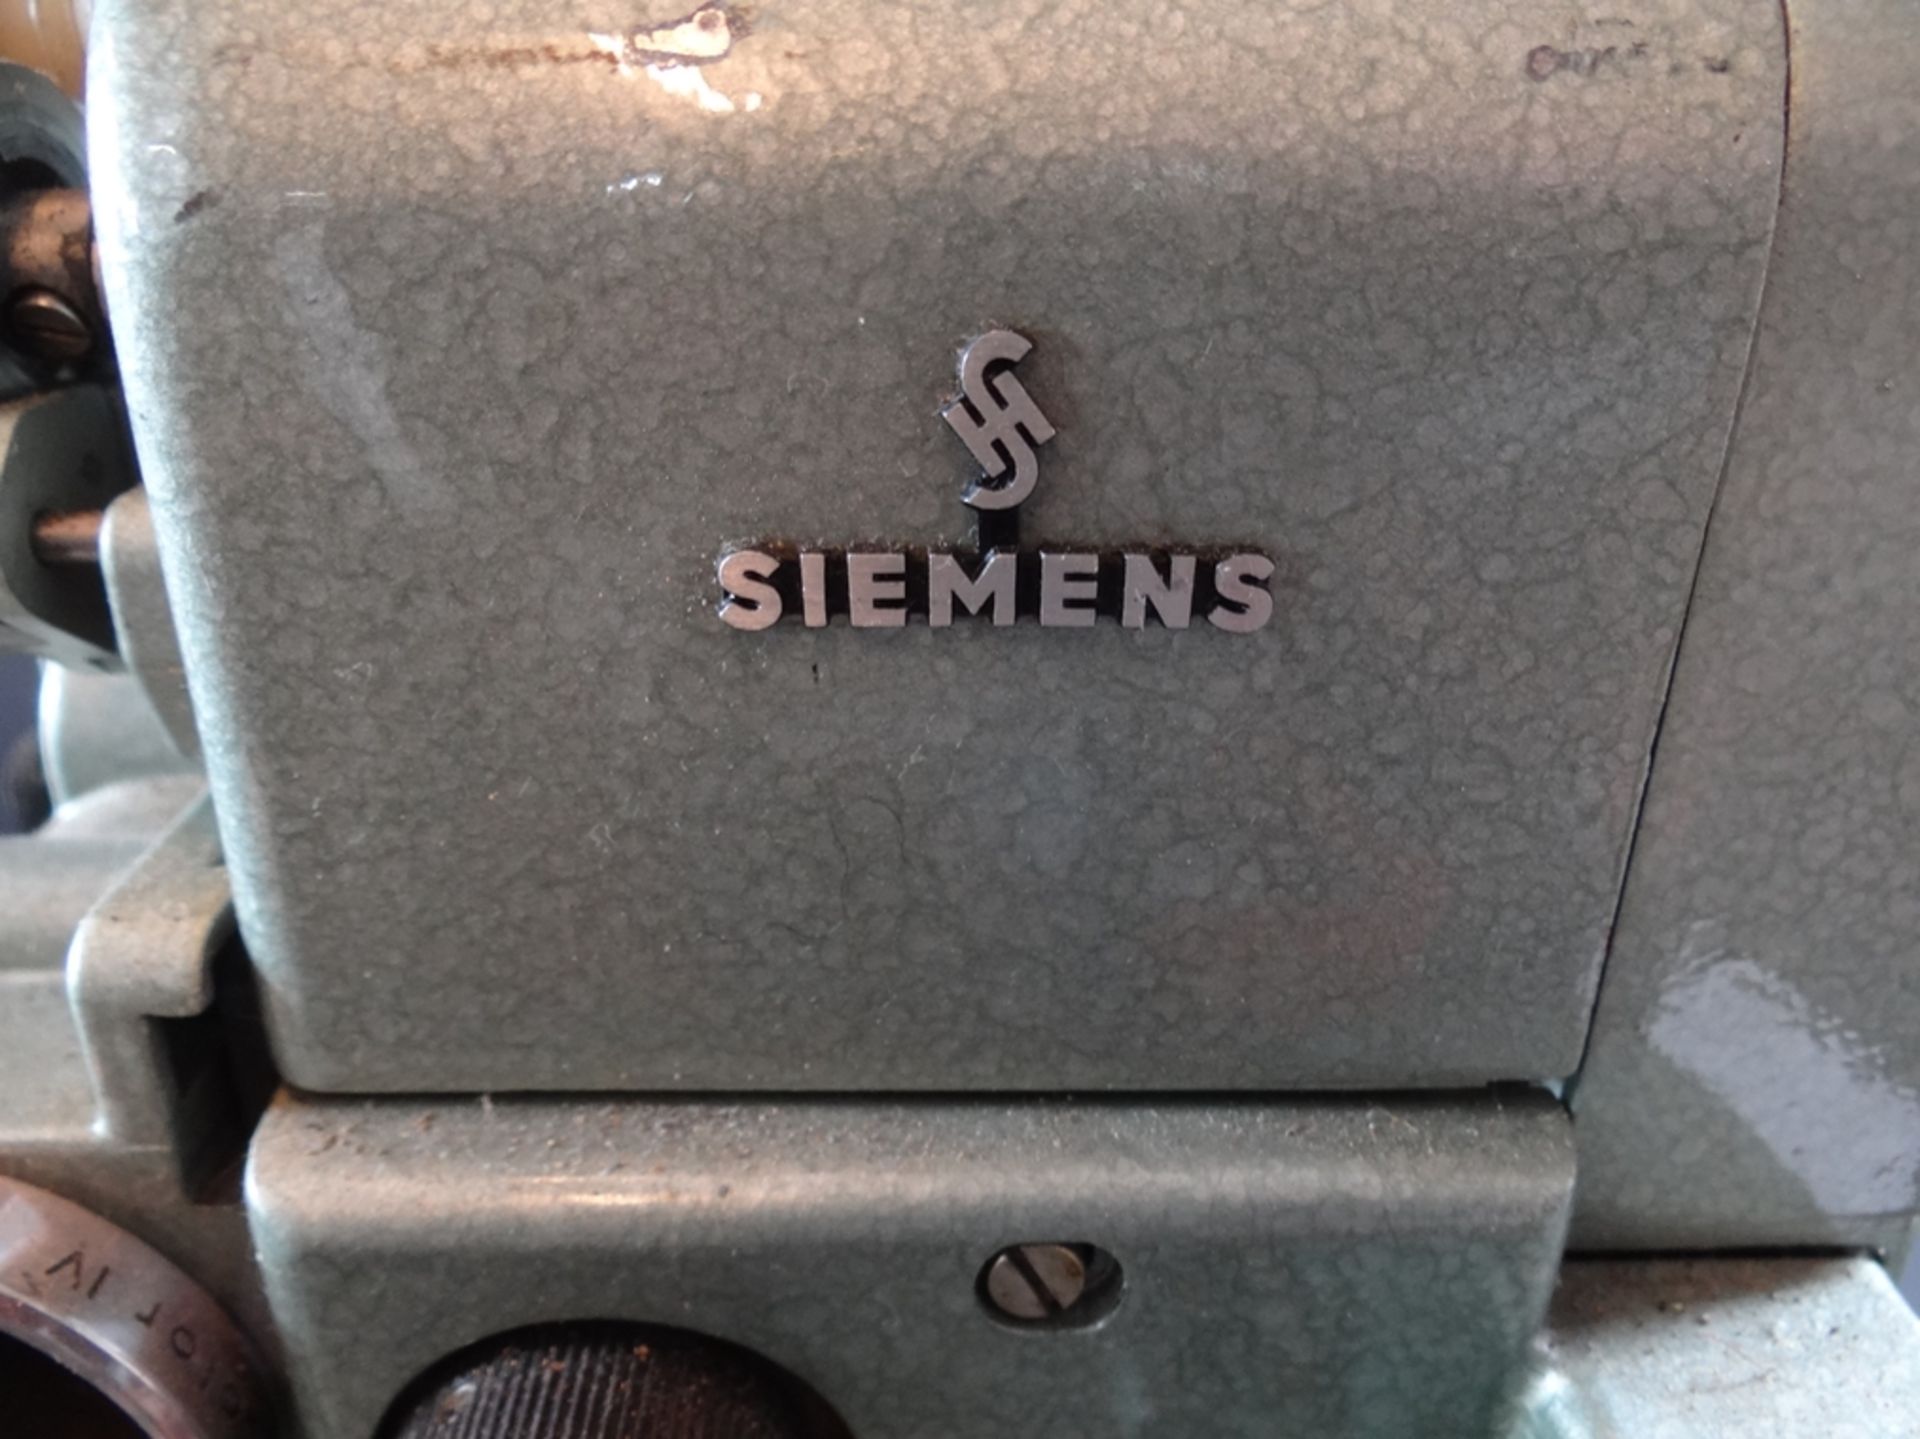 Siemens Filmprojektor, 13,5 kg, Funktion nicht geprüft, aber optisch gut erhalten - Bild 4 aus 5